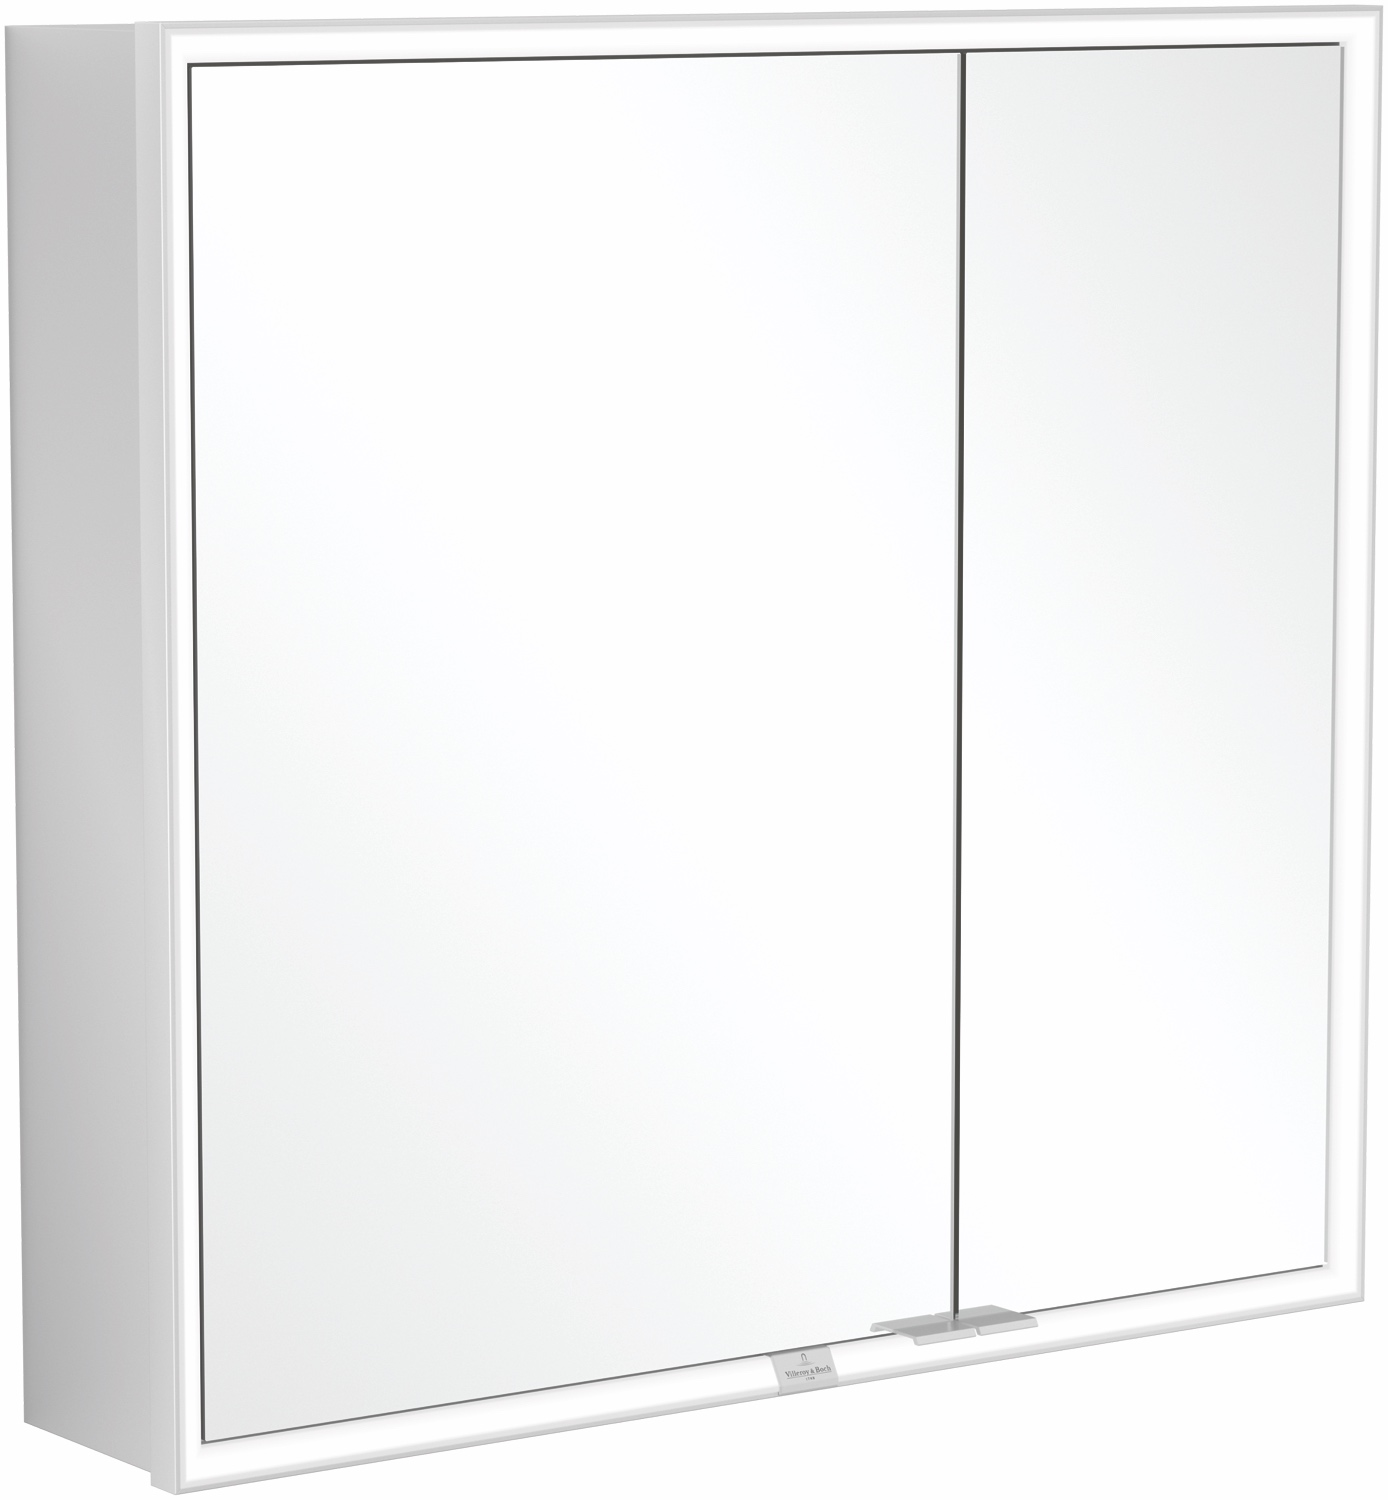 Villeroy & Boch Spiegelschrank „My View Now“ mit Ein-/Ausschalter, Smart Home fähig 80 × 75 × 16,8 cm 